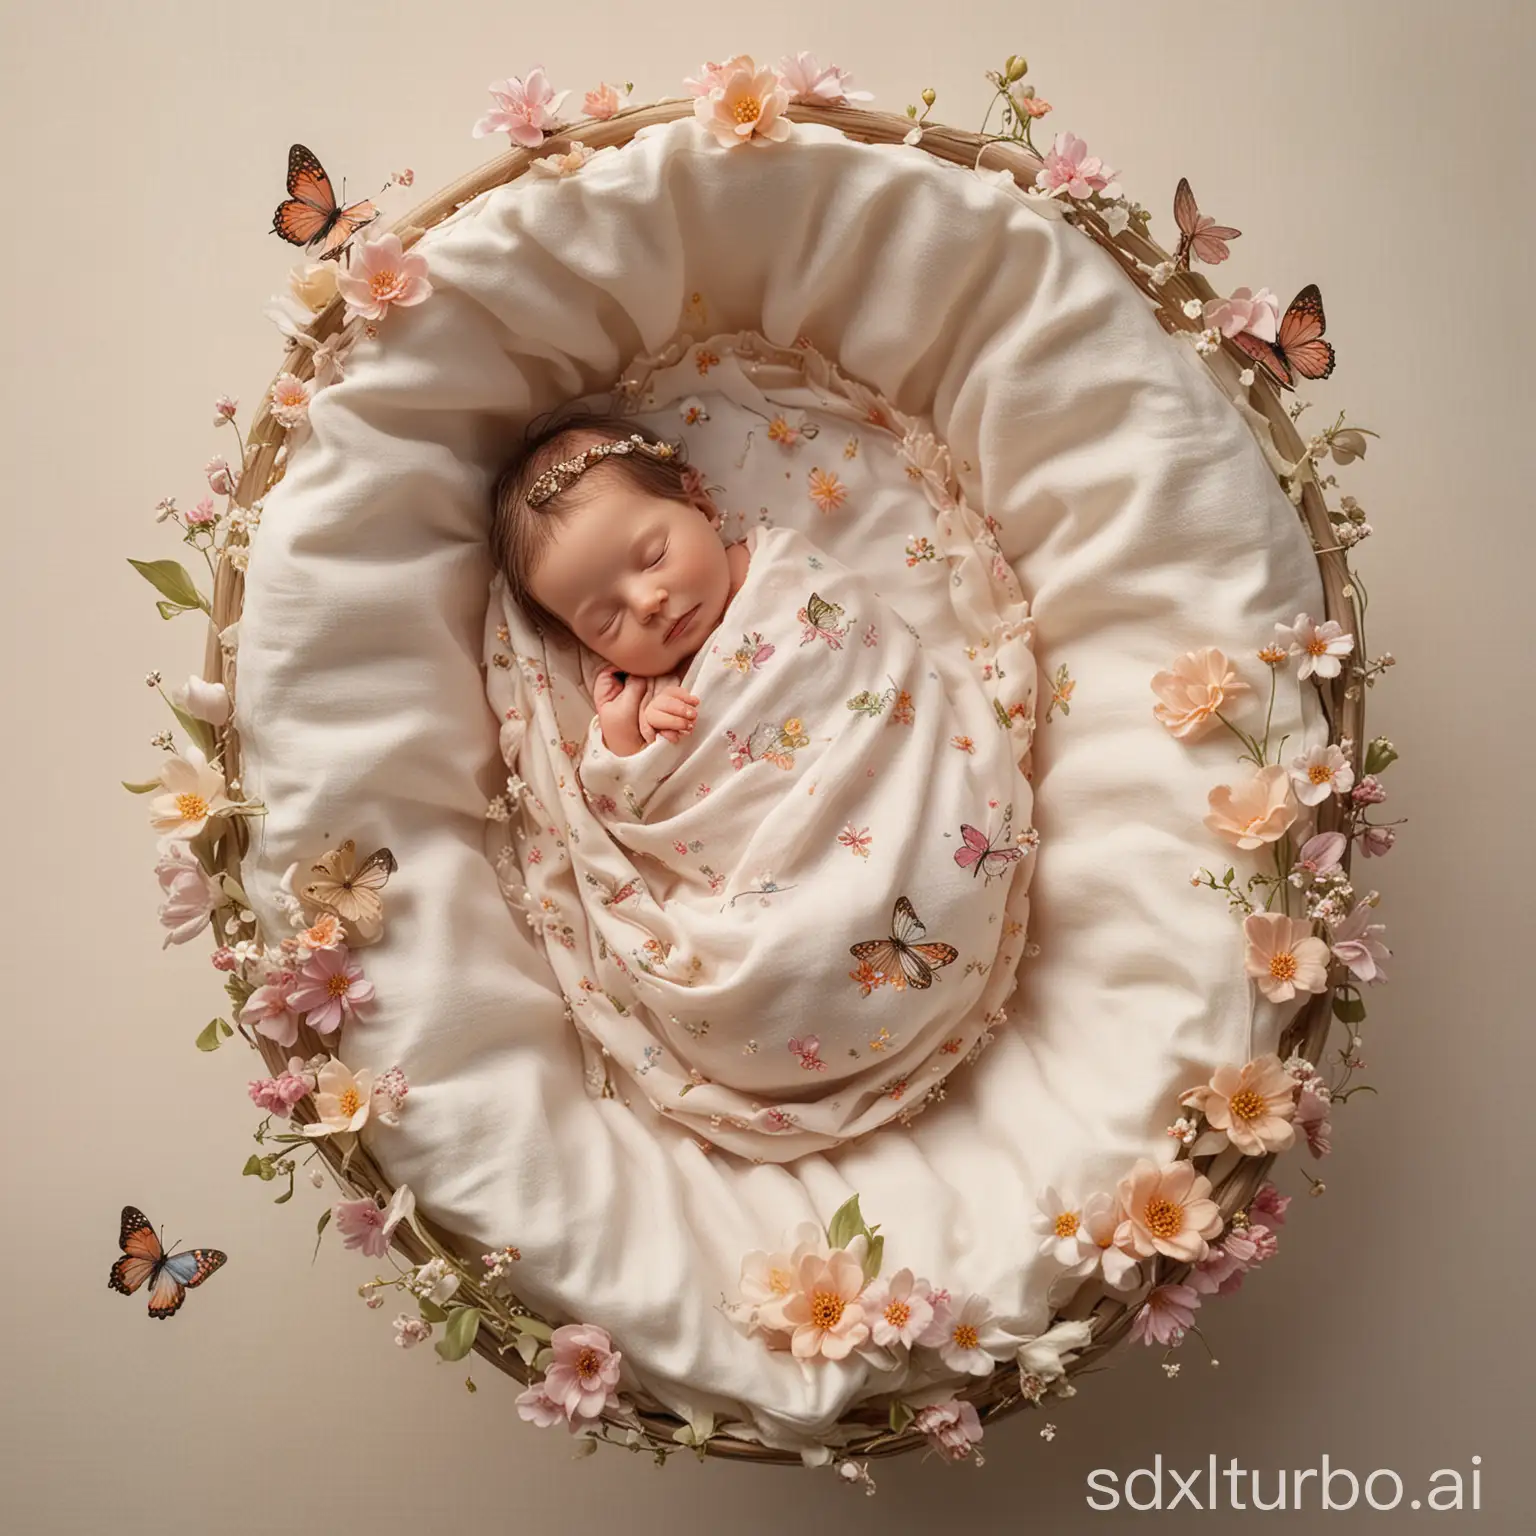 Die kleine Fee: Ein Neugeborenes schläft in einer Wiege, die wie ein Blütenkelch gestaltet ist. Eingehüllt in duftende, blütenweiche Bettwäsche, träumt es unter schwebenden, leuchtenden Feen, die Sternenstaub streuen. Ein Plüsch-Schmetterling liegt schützend neben ihm.